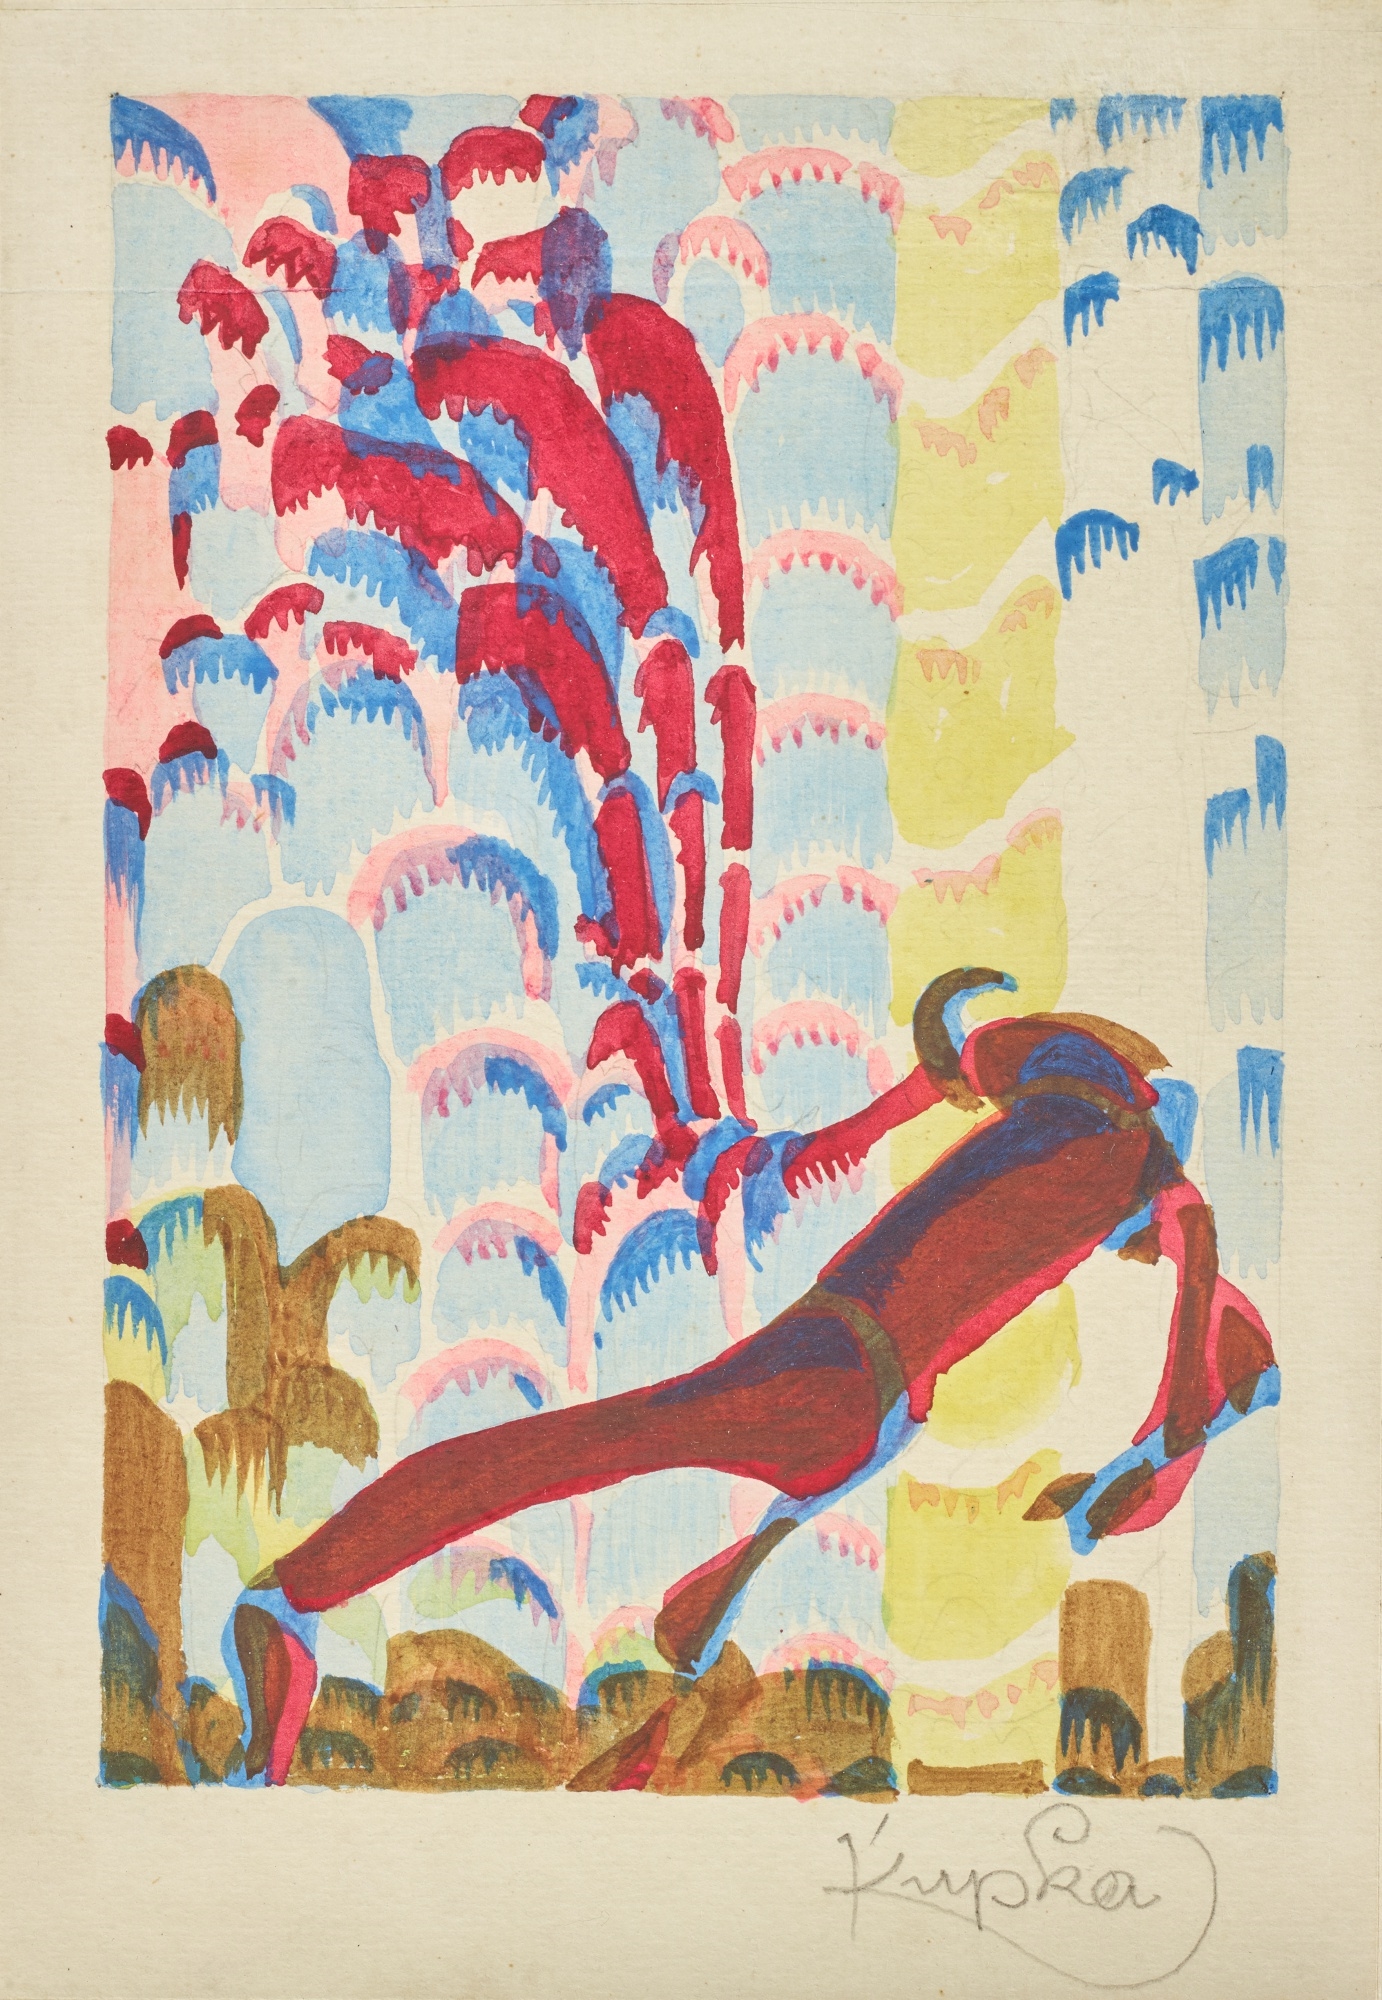 Artwork by František Kupka, Figure in a Landscape, Made of watercolour on paper